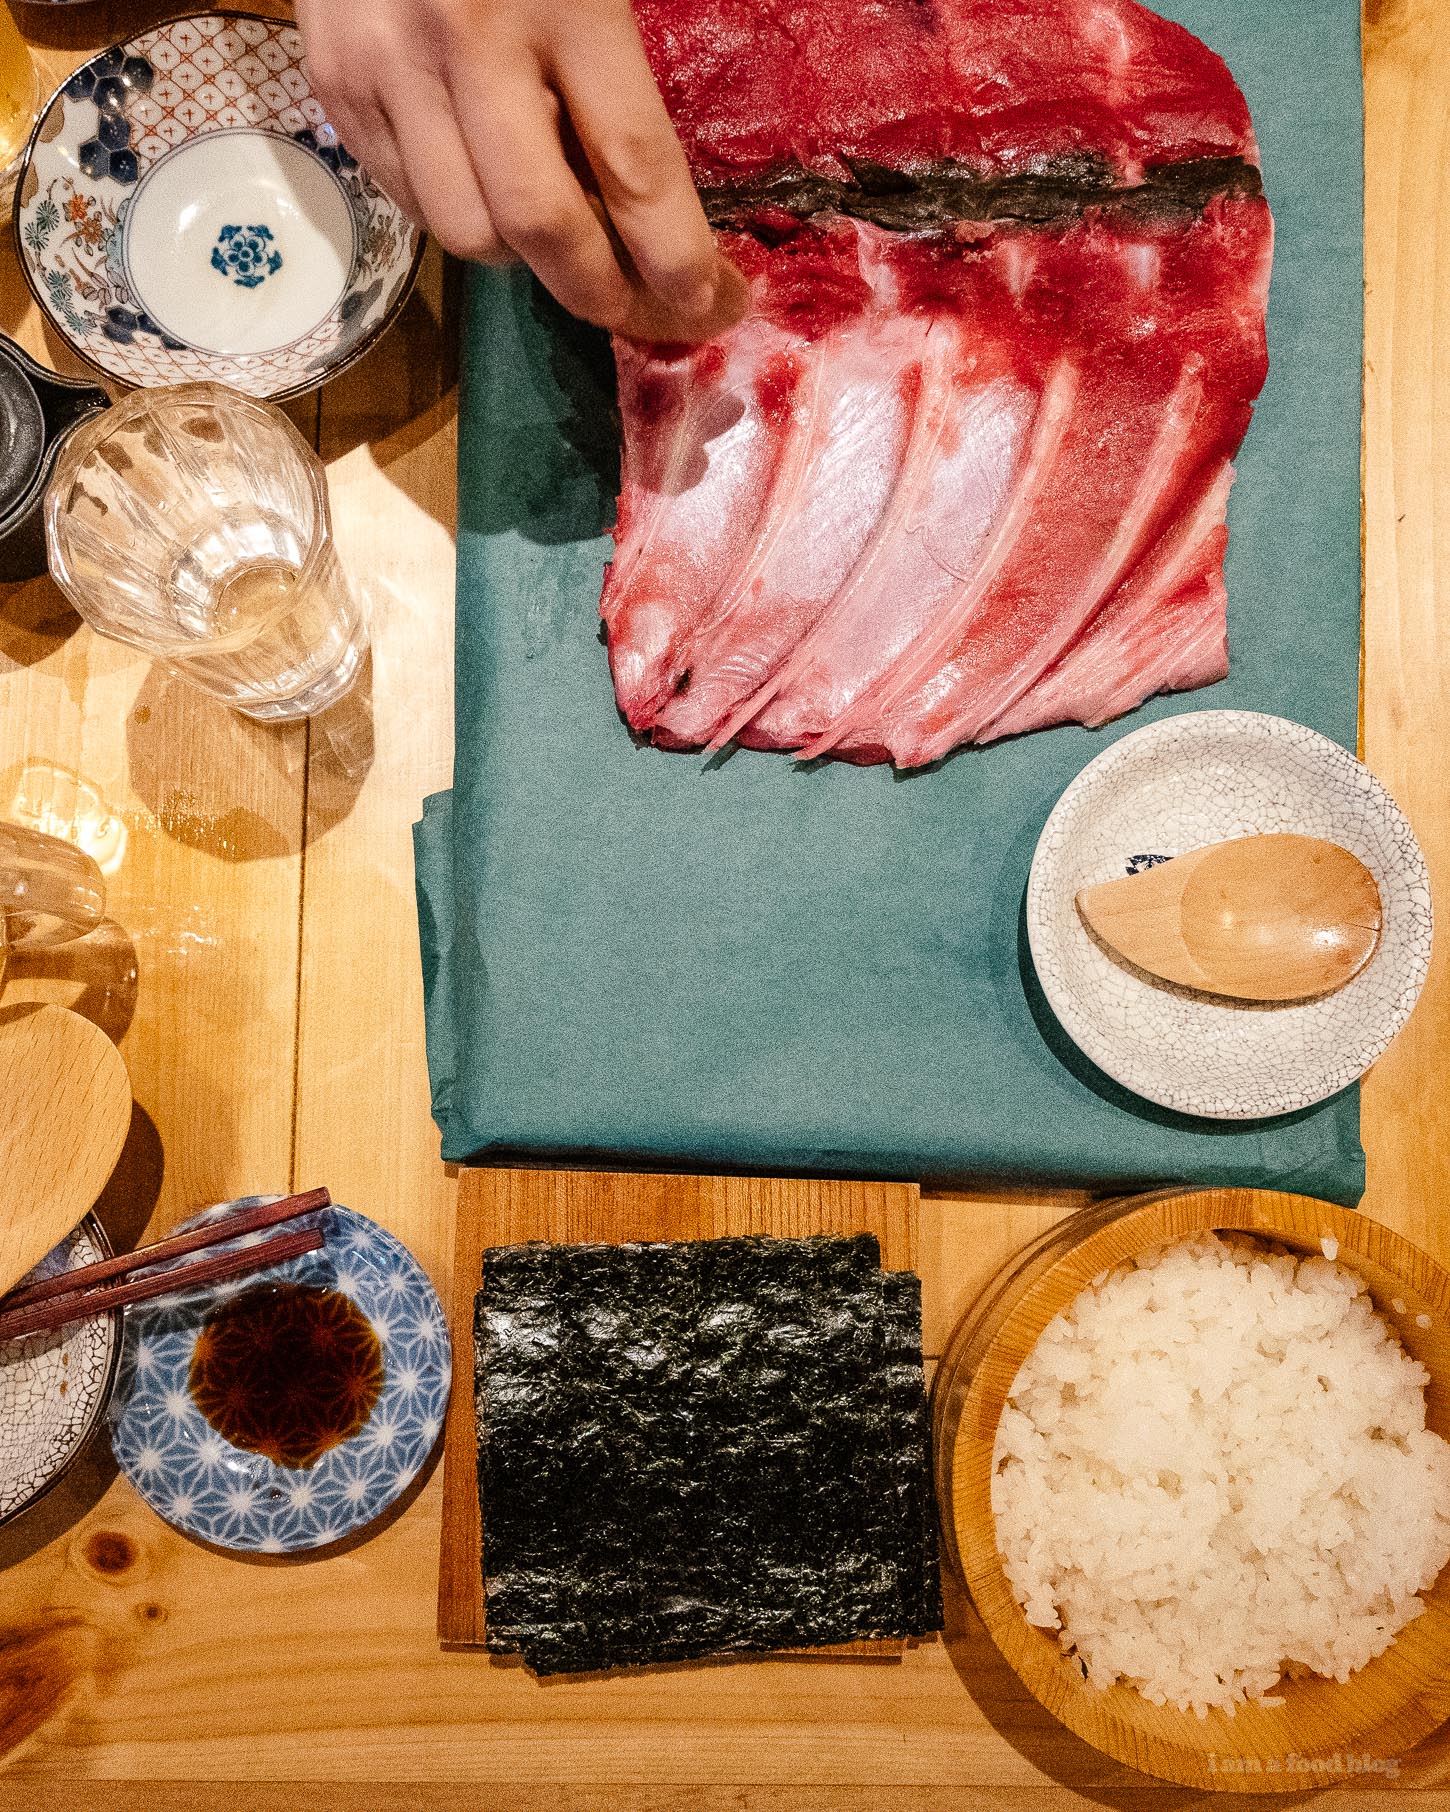 dónde comer atún en tokio #viajes #tún #tokio #comida japonesa